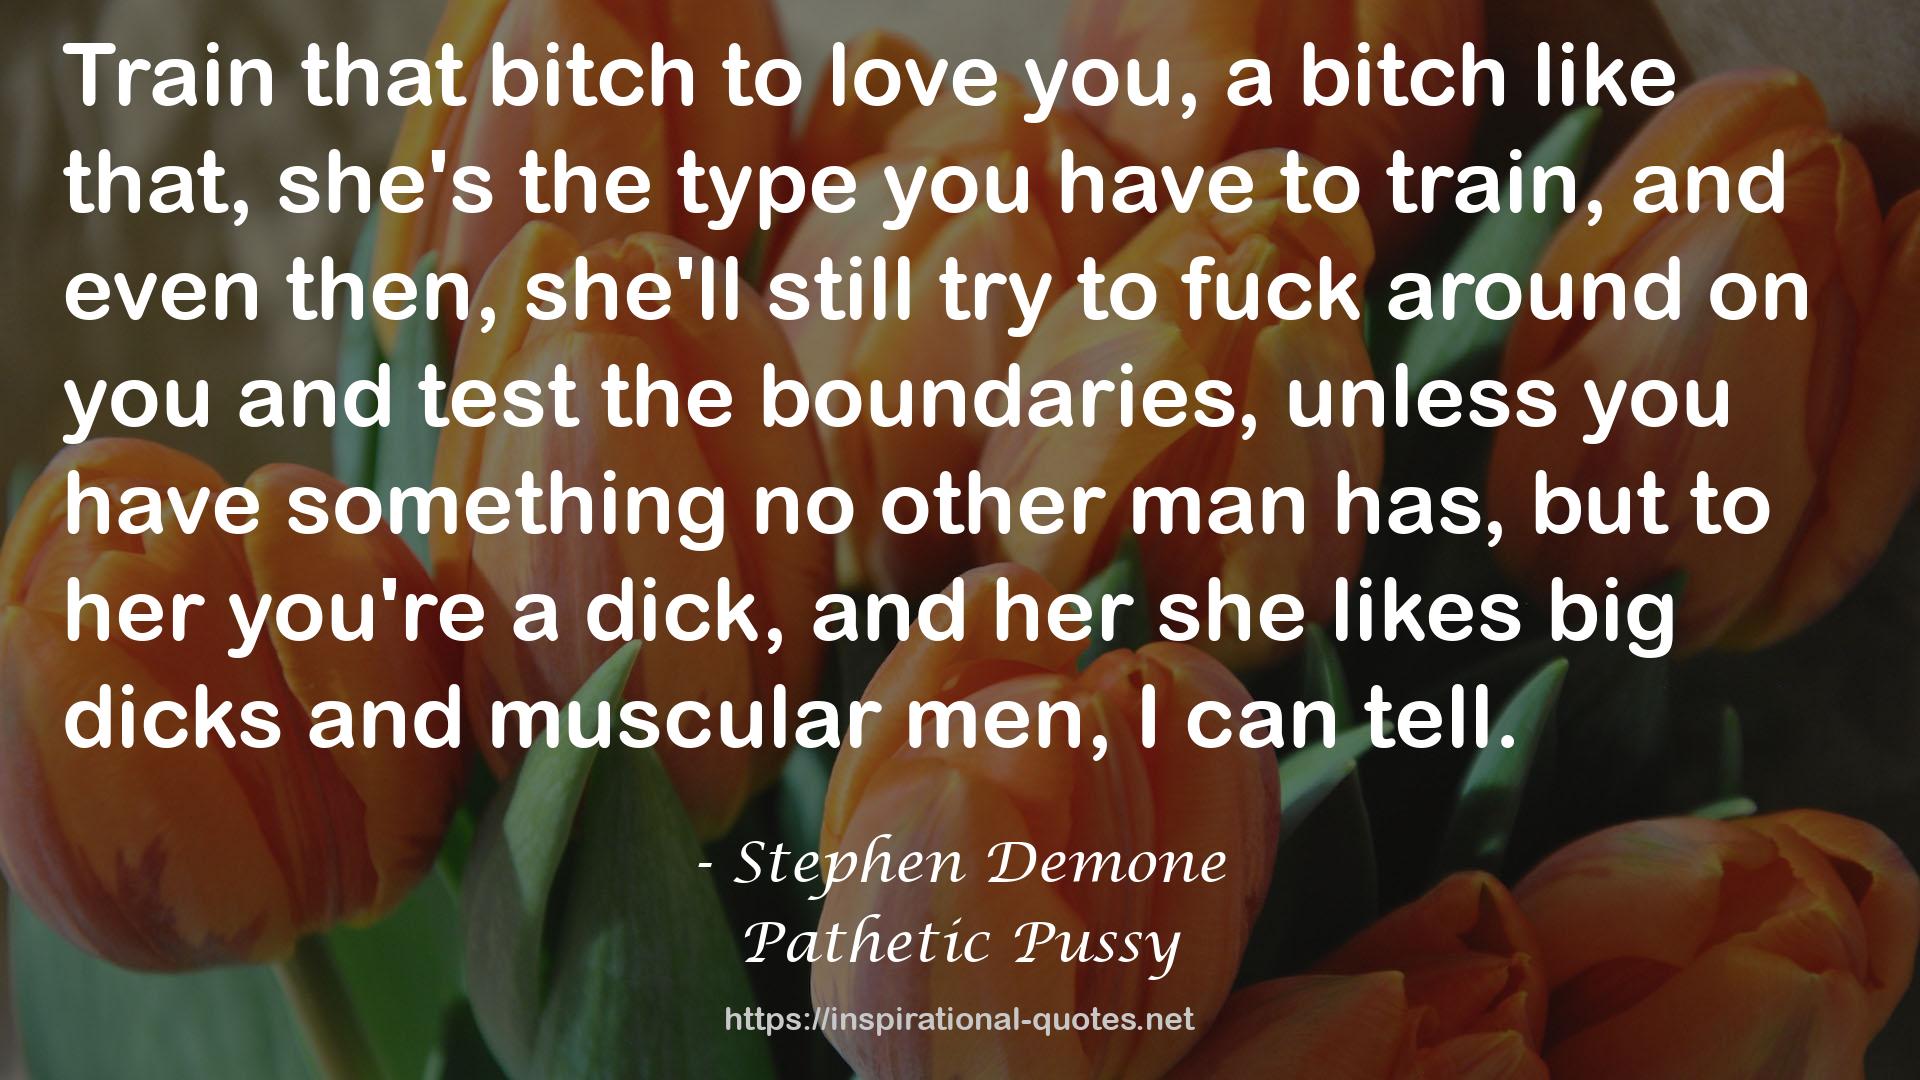 Stephen Demone QUOTES